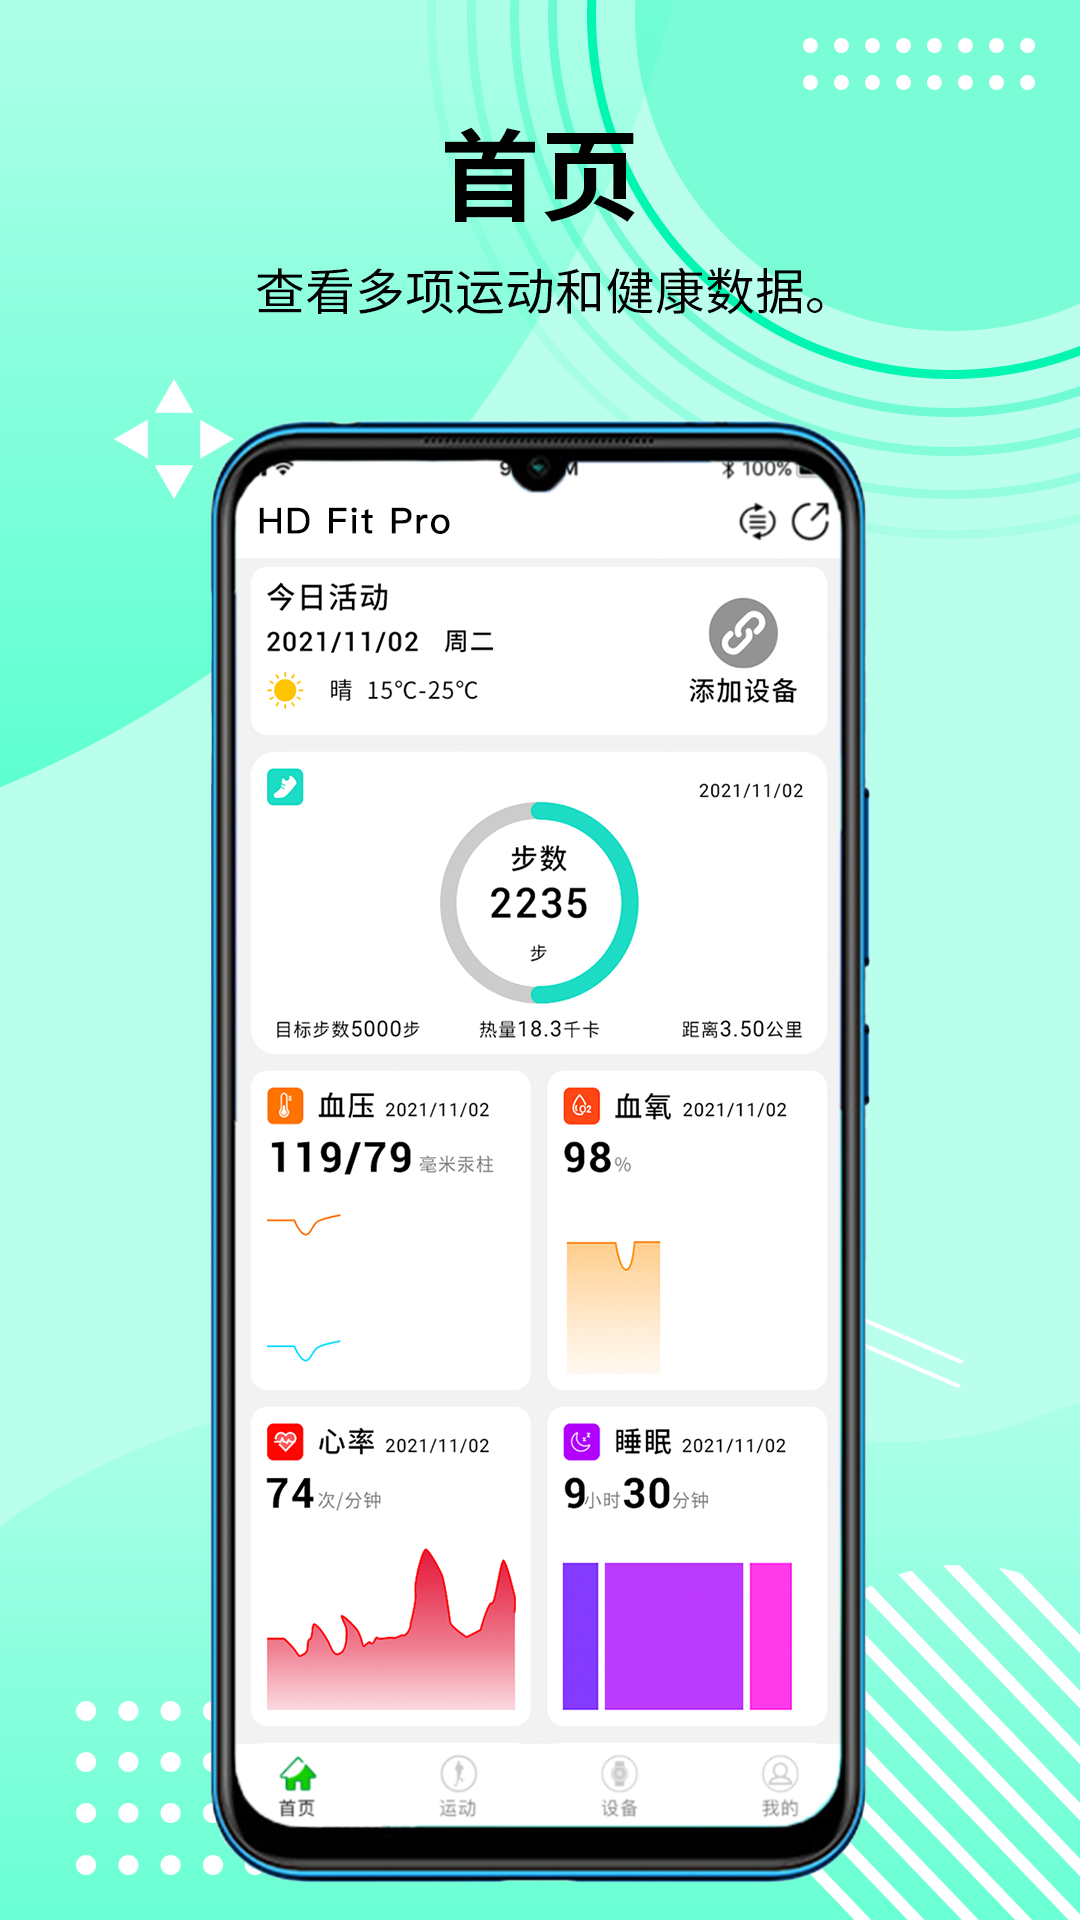 HD Fit Pro智能健康1.0.107